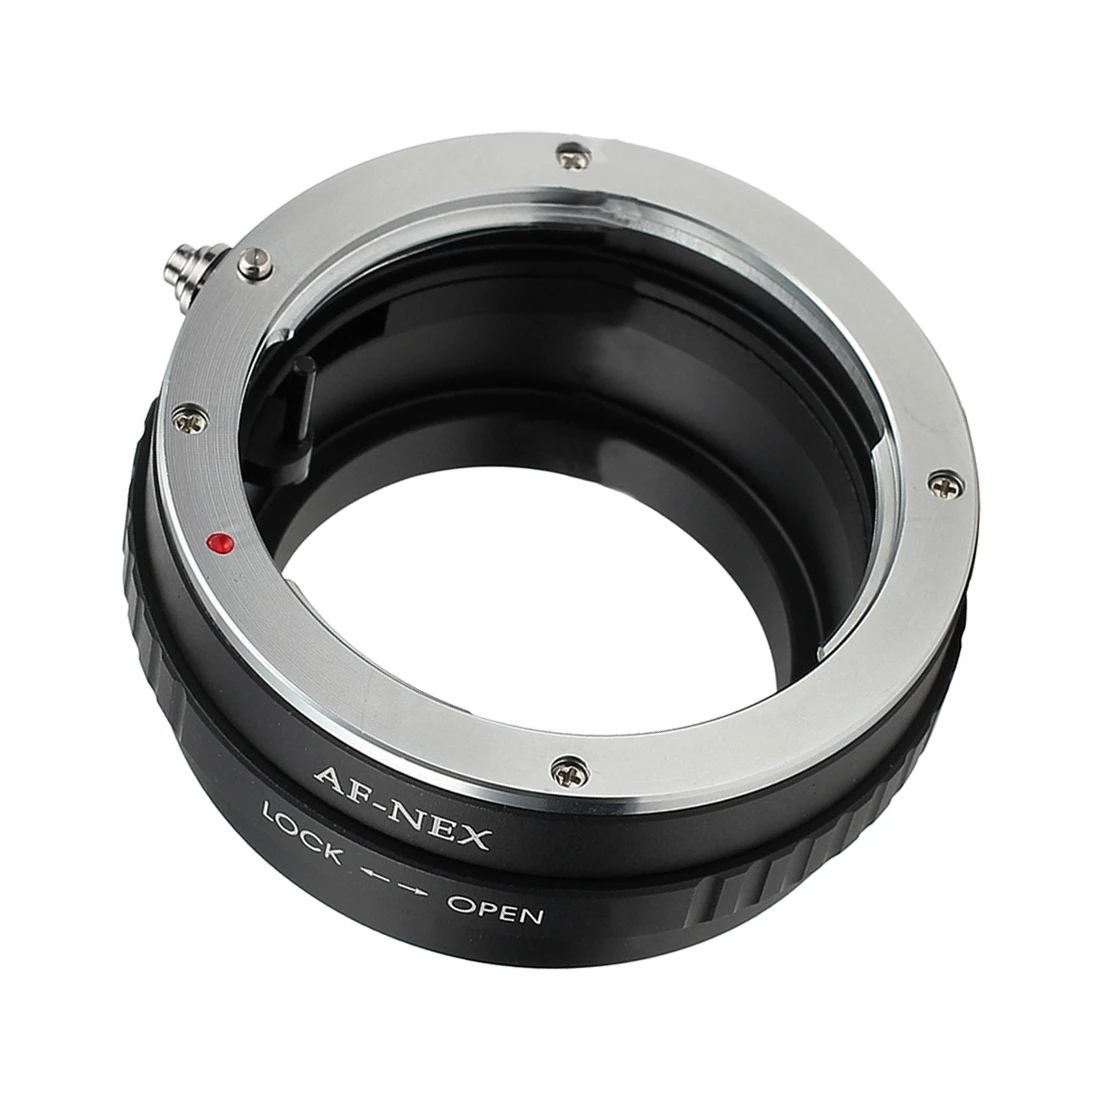 Переходное кольцо GloryStar для камеры sony Alpha Minolta Af A-линза/объектив Nex 3,5, 7 E-mount